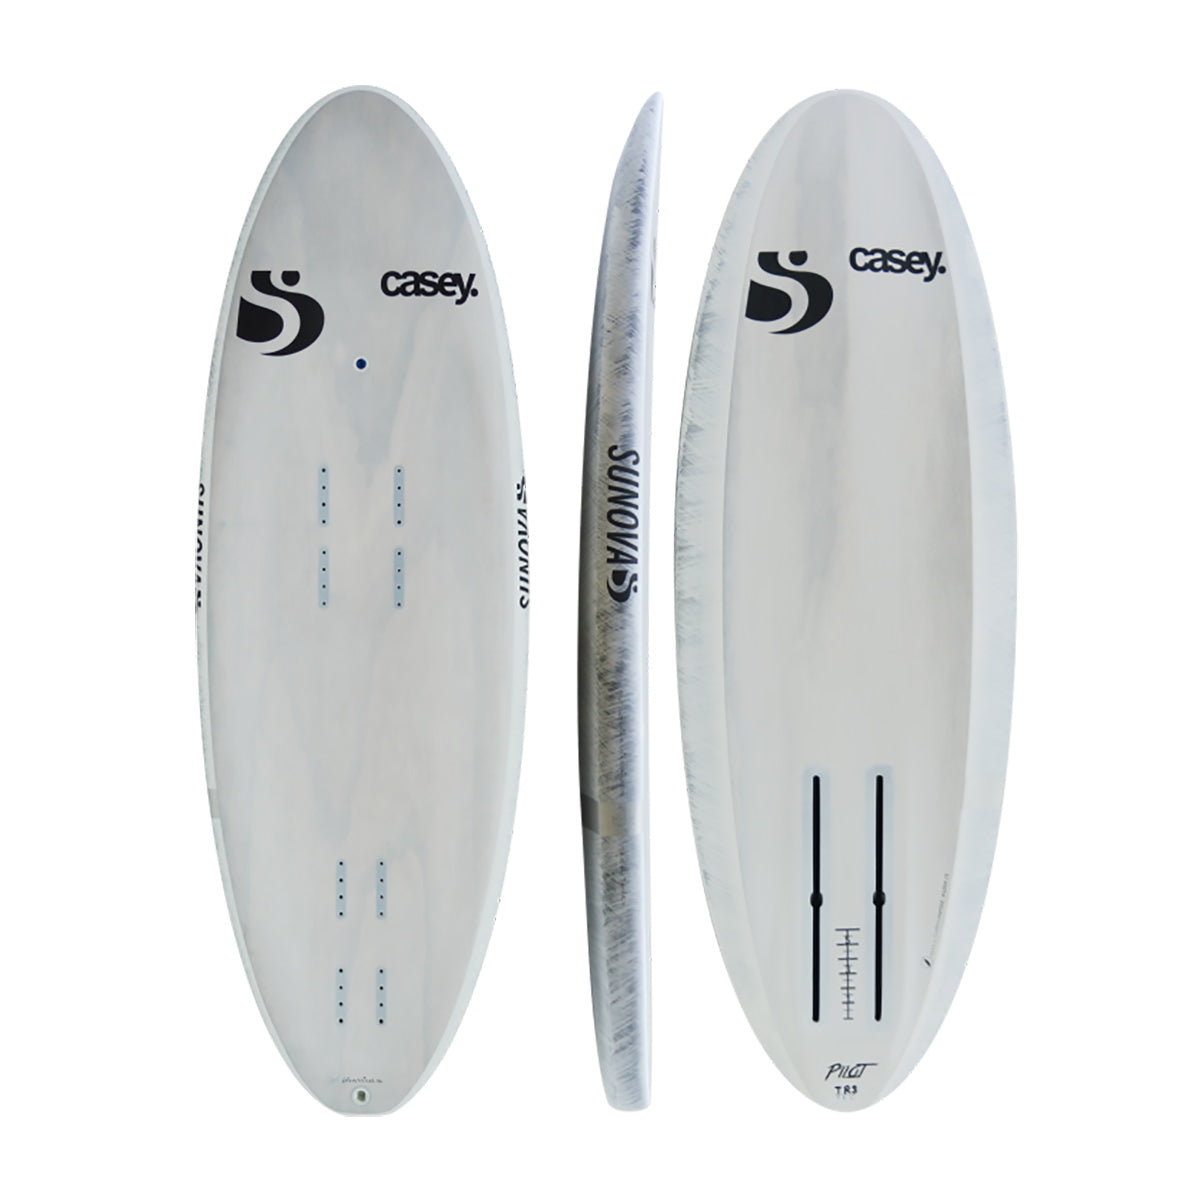 Drei Ansichten des Sunova Casey Aviator Pilot Surf Prone Board in der TR3 Bauweise.